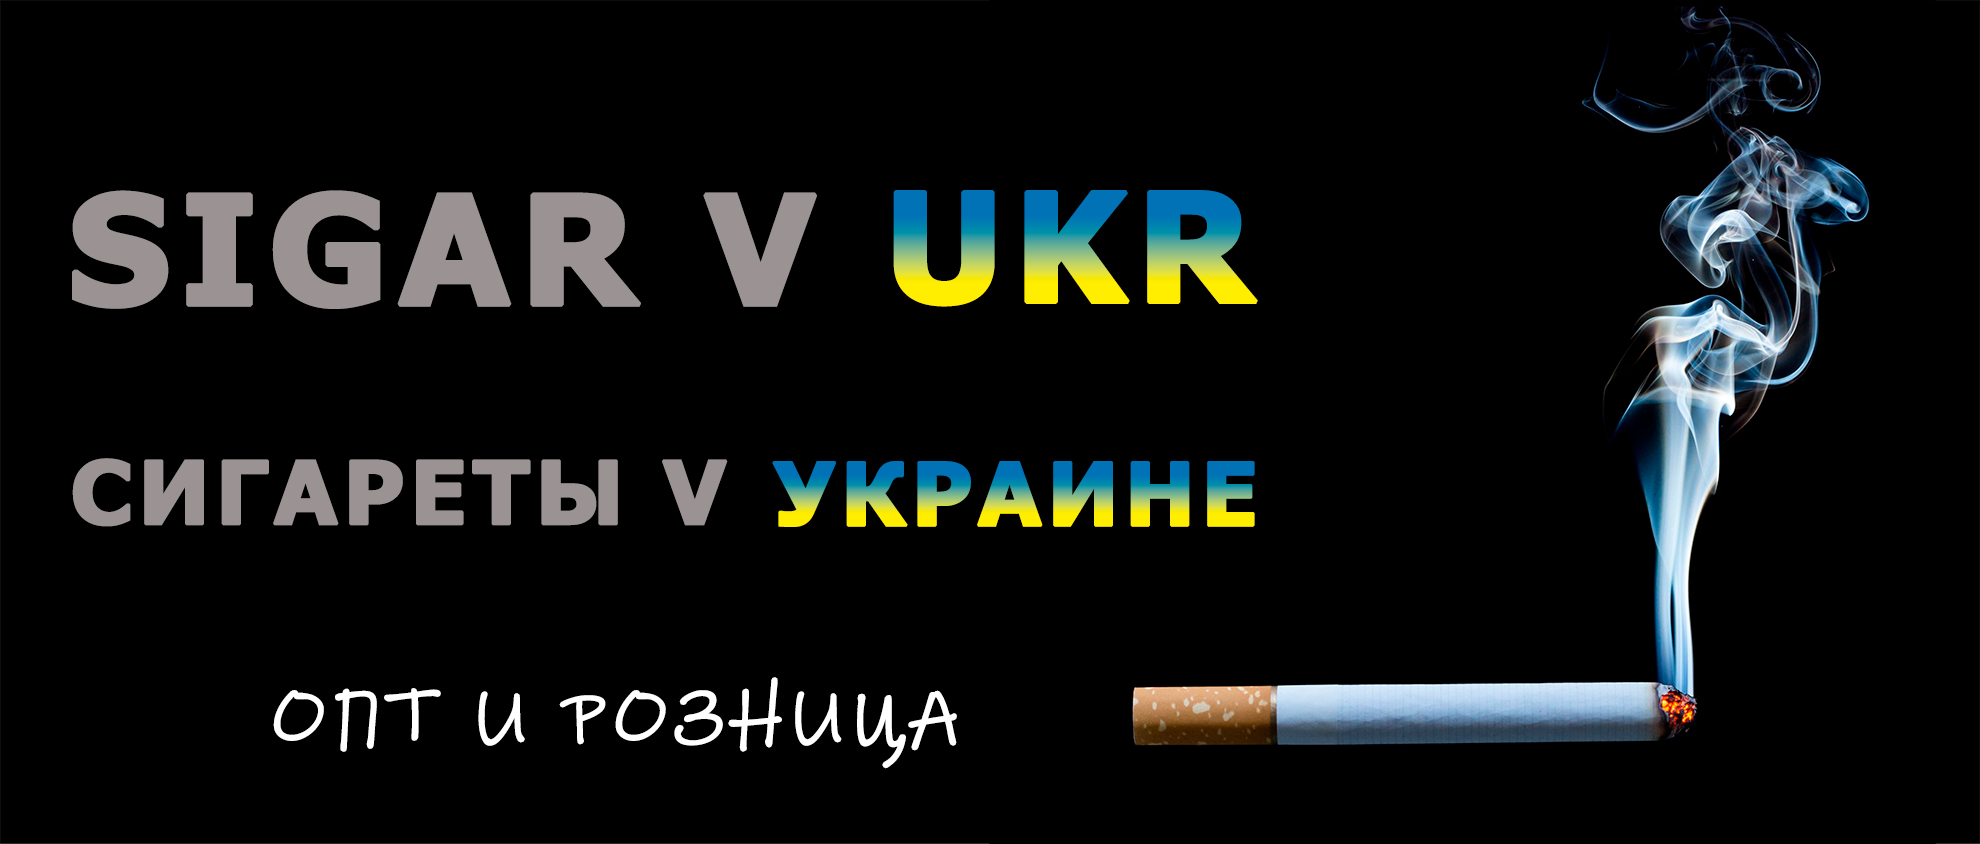 Сигареты оптом в Украине